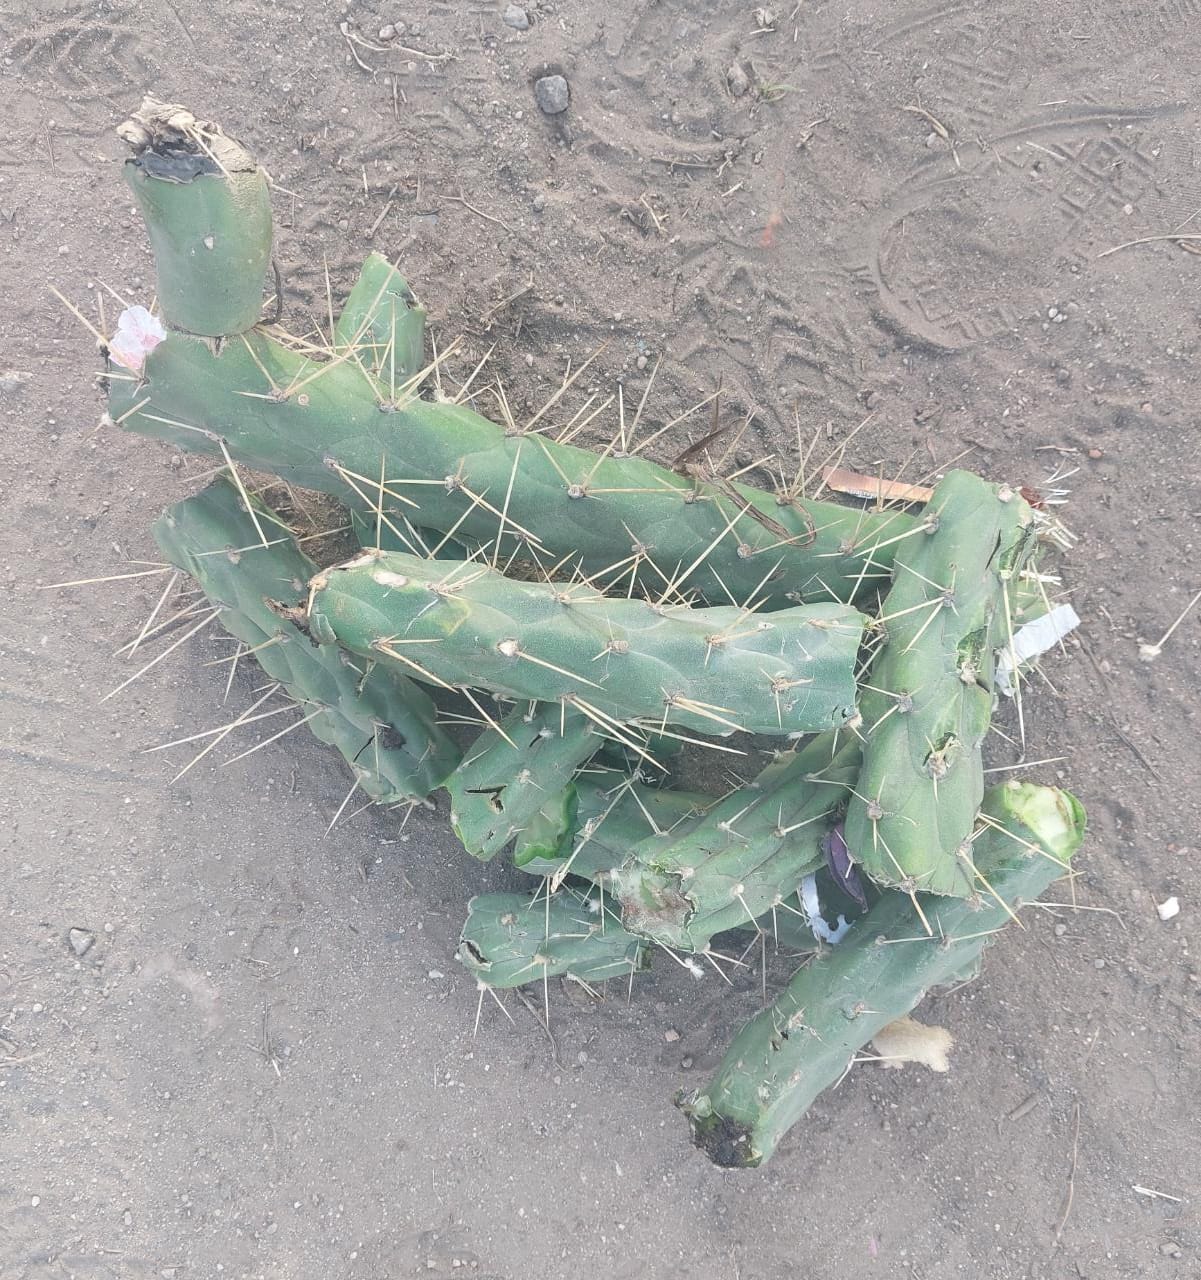 Encontraron espinas de cactus entre los residuos sólidos